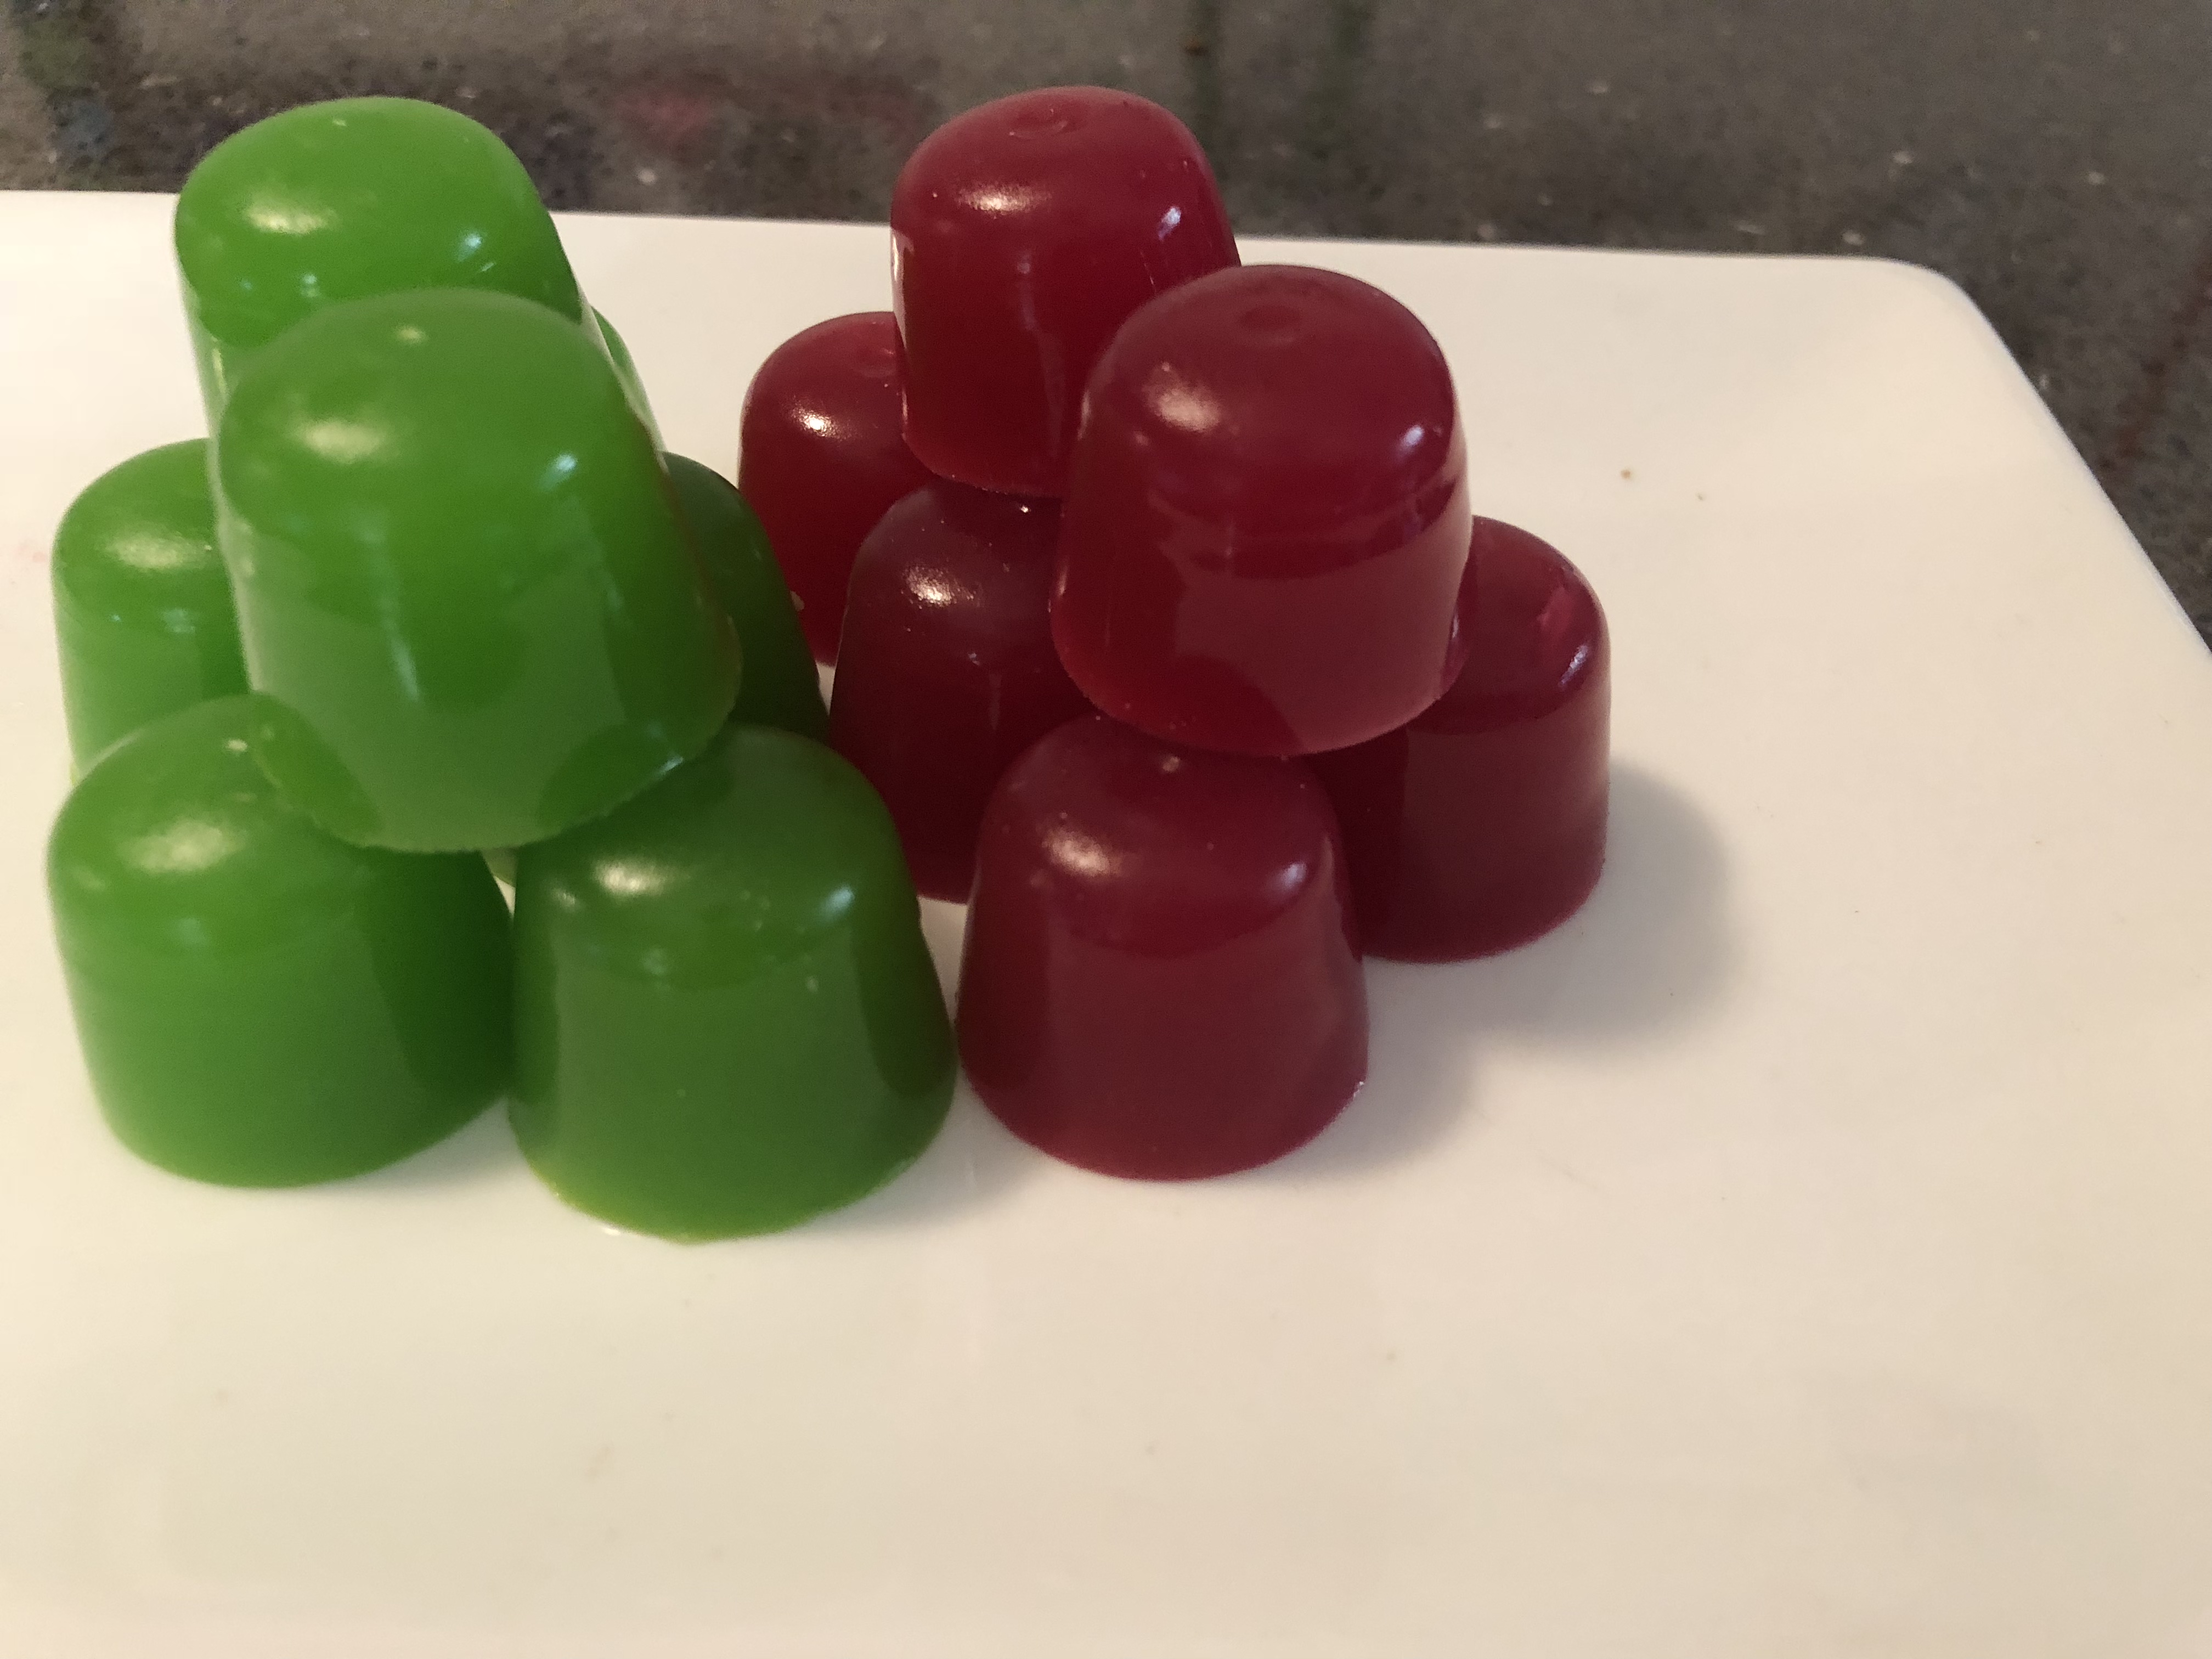 Protein Gummies